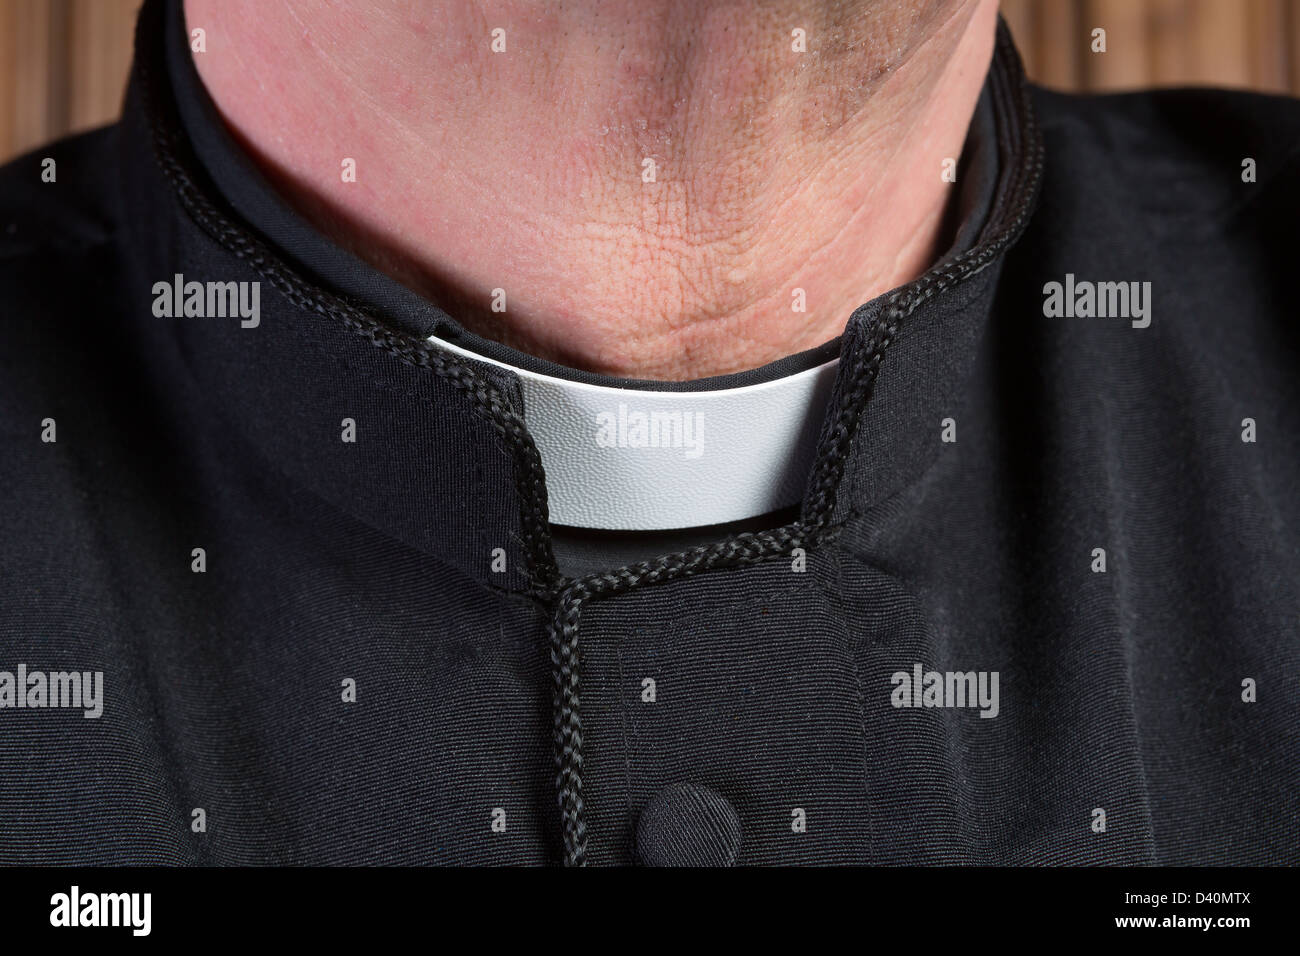 Primo piano del collo di un sacerdote che indossa una camicia nera con tonaca bianca e collare clericale Foto Stock